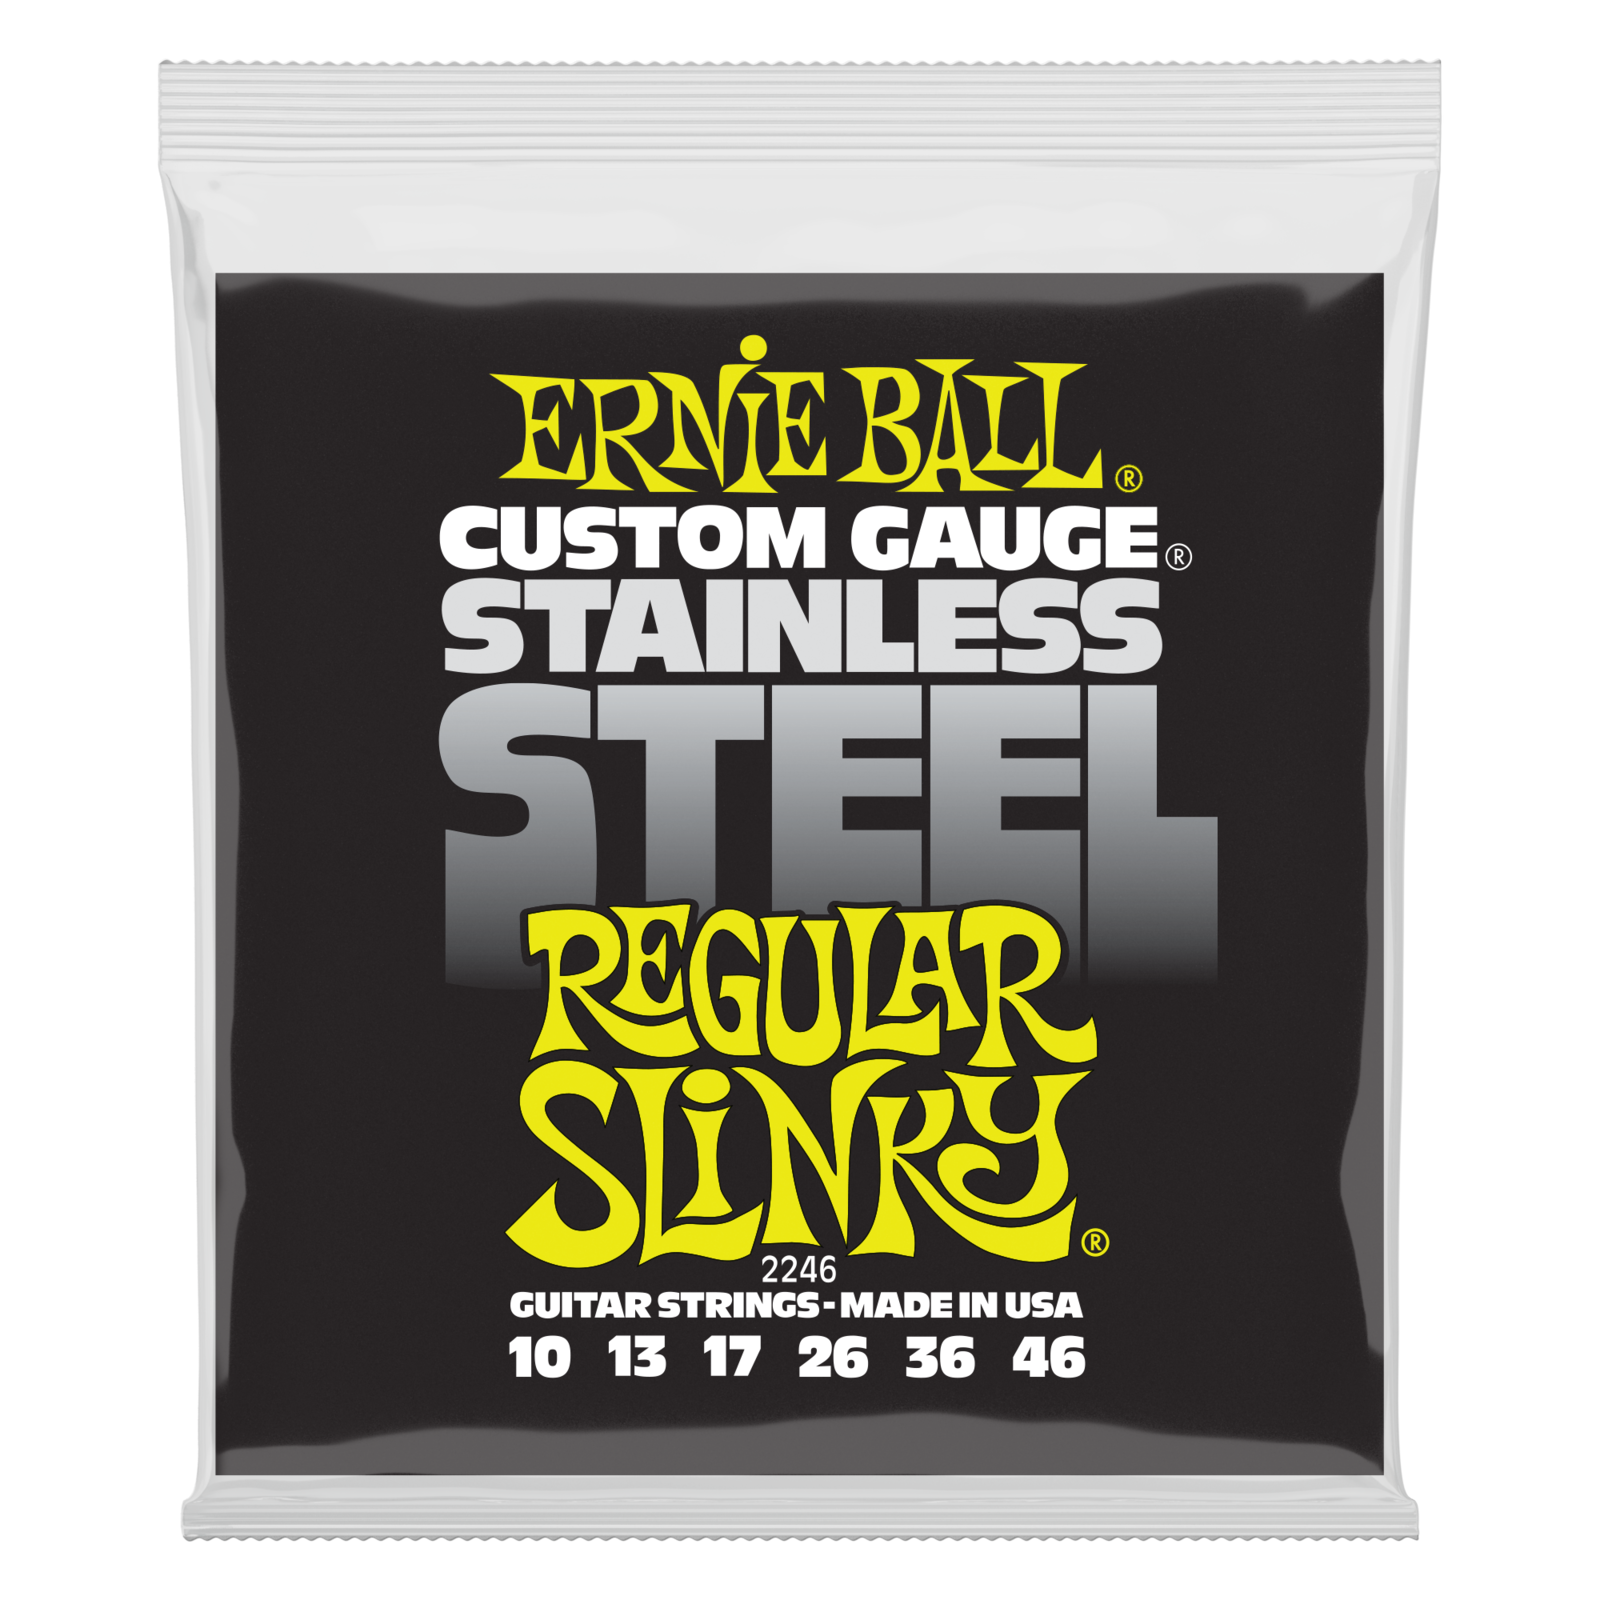 Elektromos gitárhúrok Ernie Ball 2246 Stainless Steel Regular Slinky